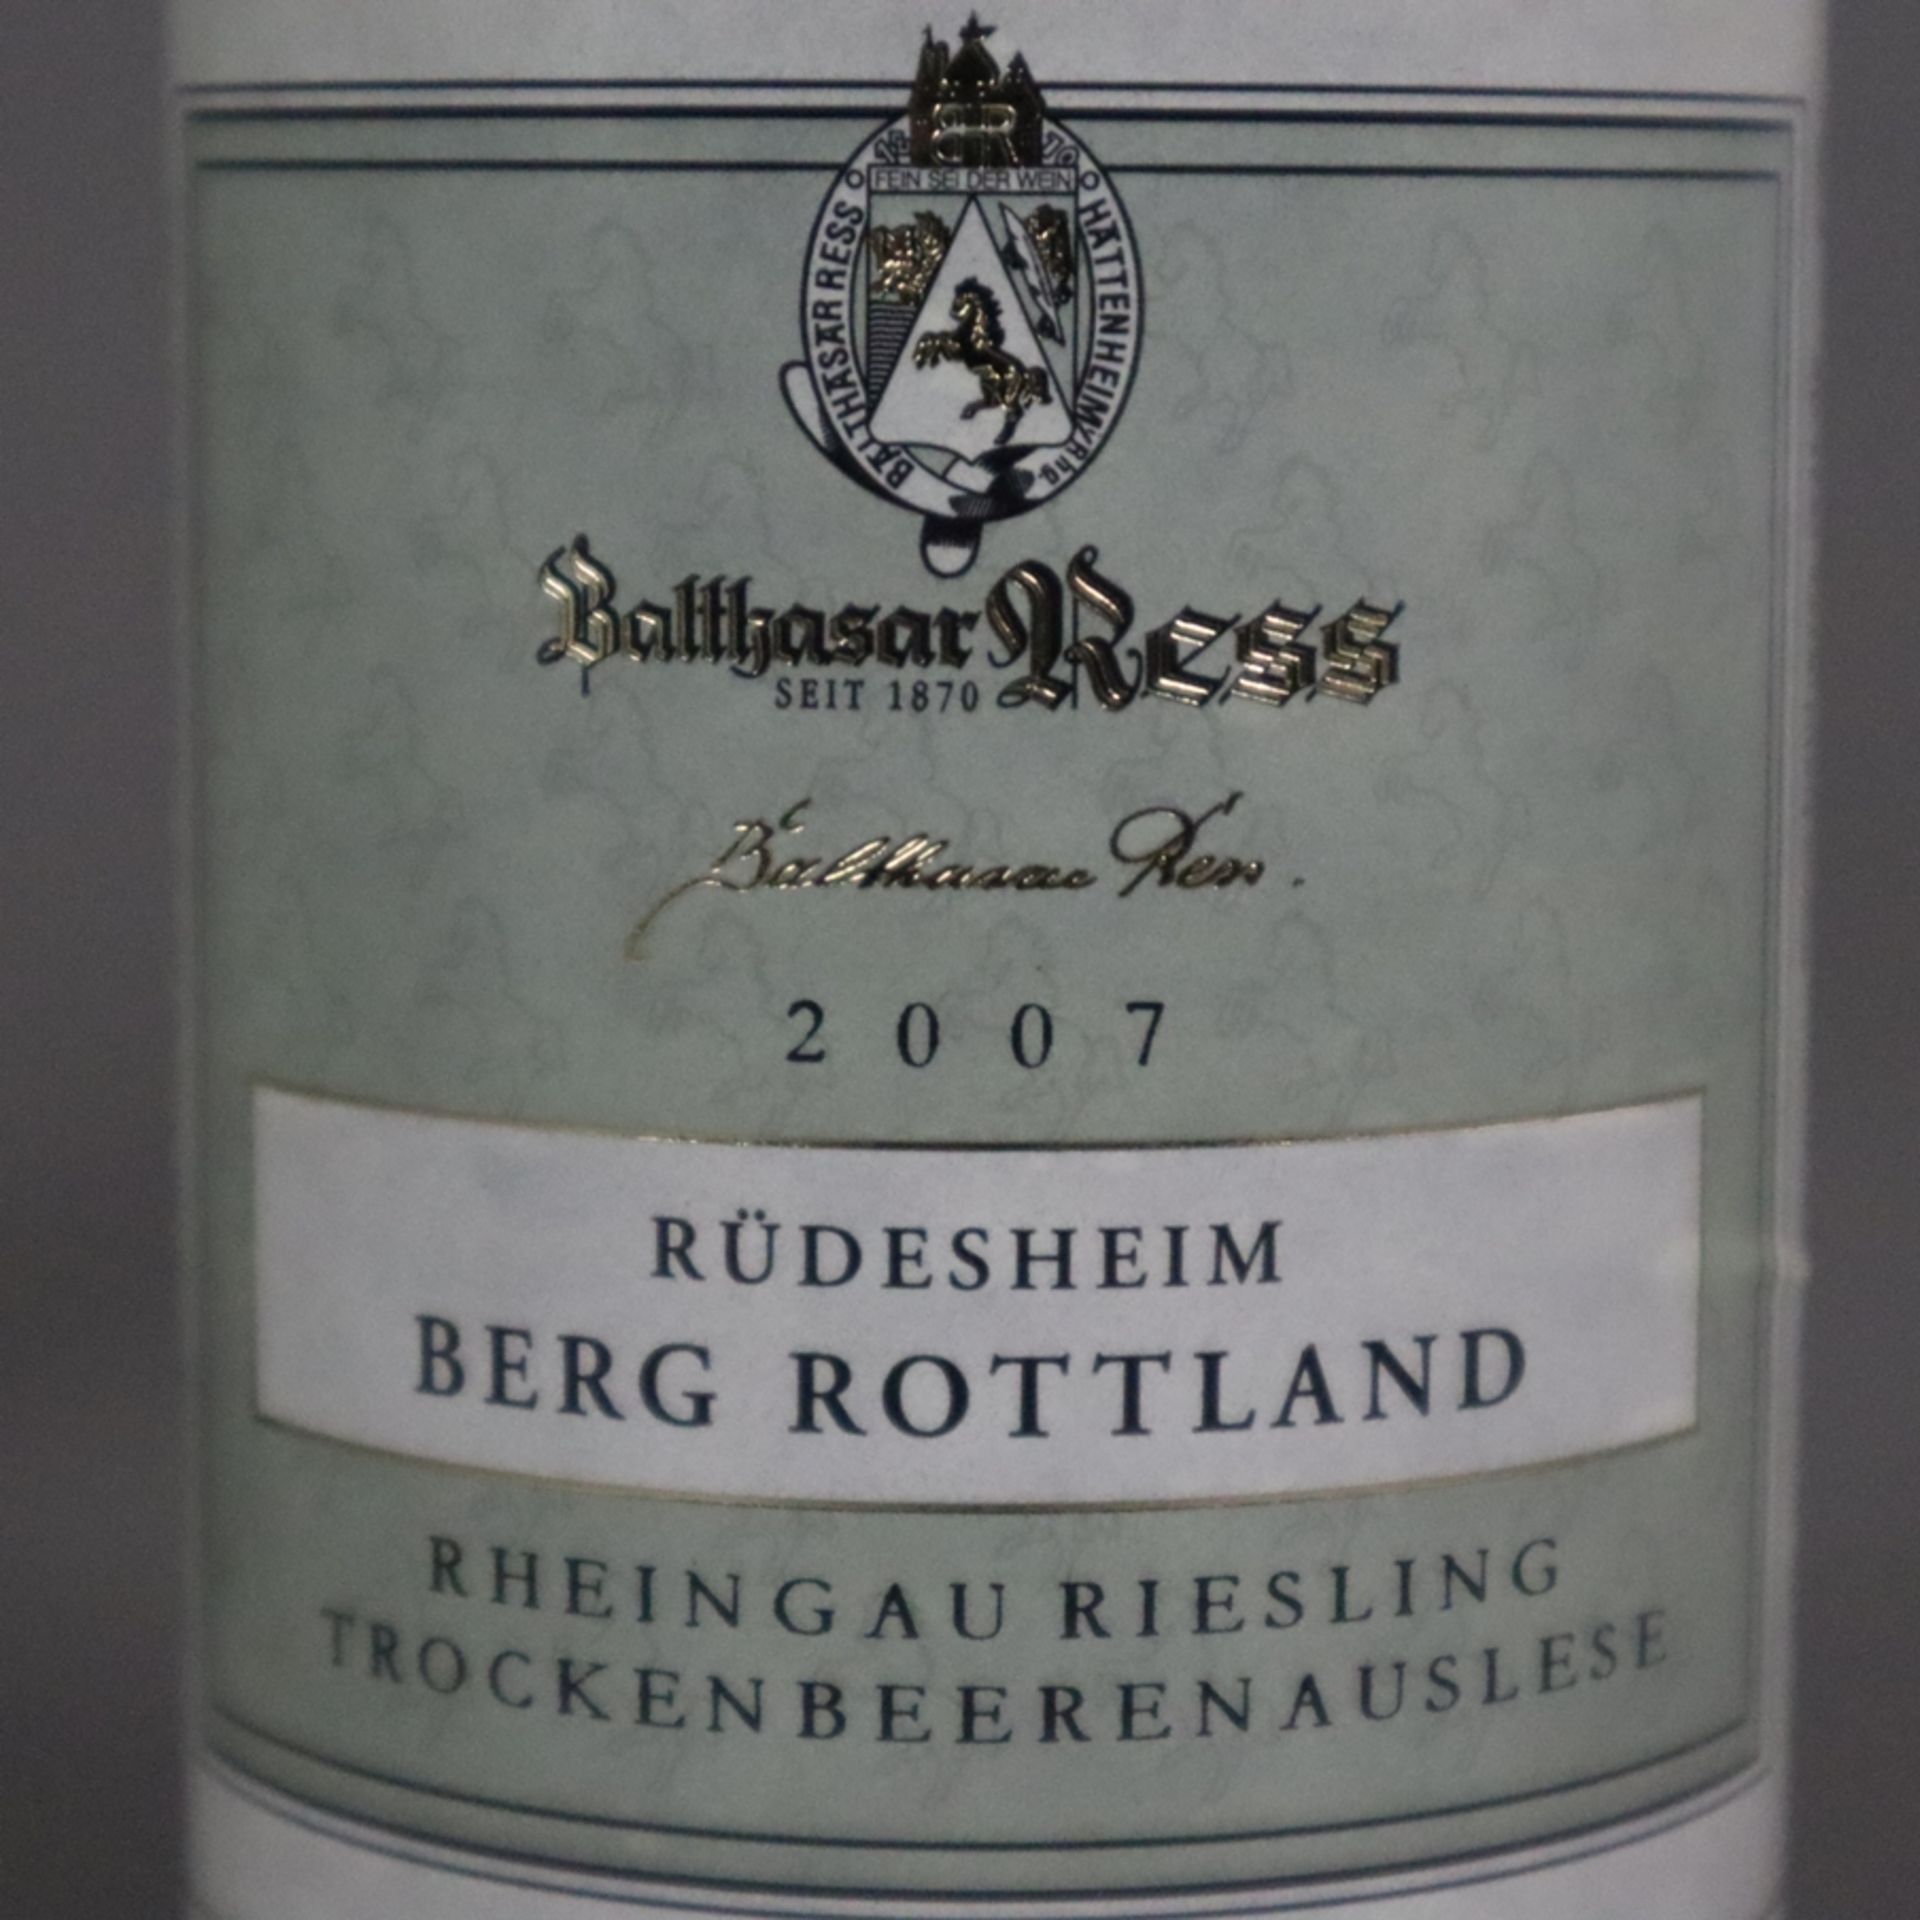 Wein - 2 Flaschen 2007 Rüdesheim Berg Rottland Riesling Trockenbeerenauslese, je 375 ml, Füllstand: - Bild 4 aus 6